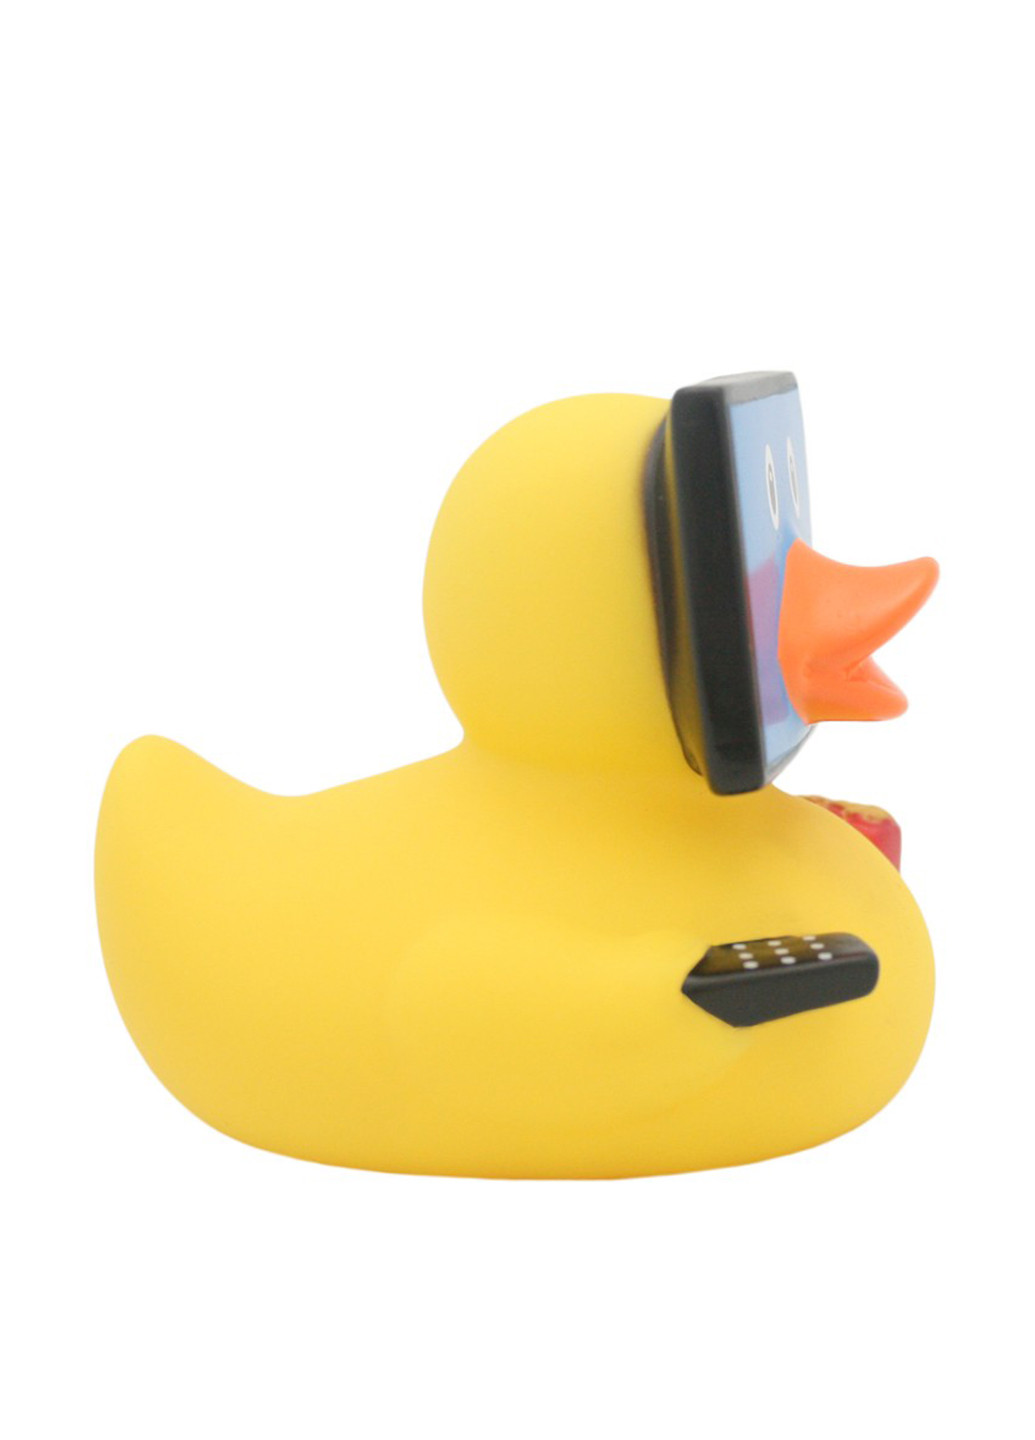 Іграшка для купання Качка TV, 8,5x8,5x7,5 см Funny Ducks (250618755)